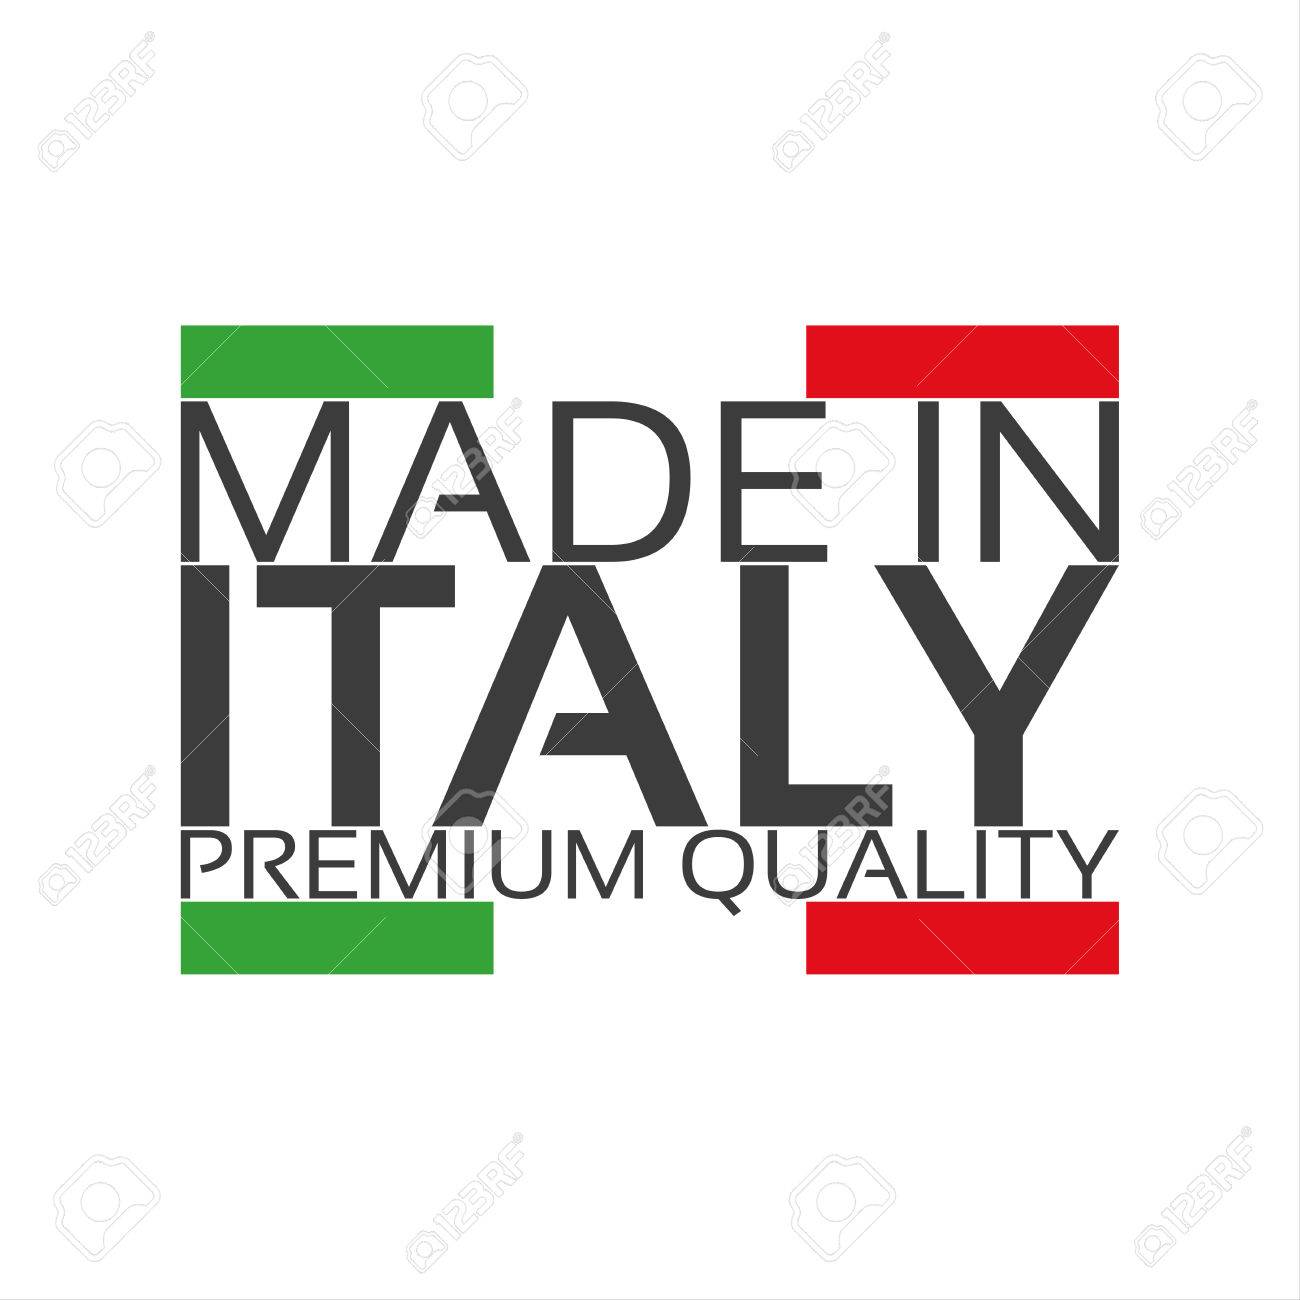 Manual PASTA MACHINE DIVINA®, the Evolution of Demetra® Cavatelli,  Orecchiette, Gnocchi Sardi Pasta Maker Pasta Extruder-made in Italy 